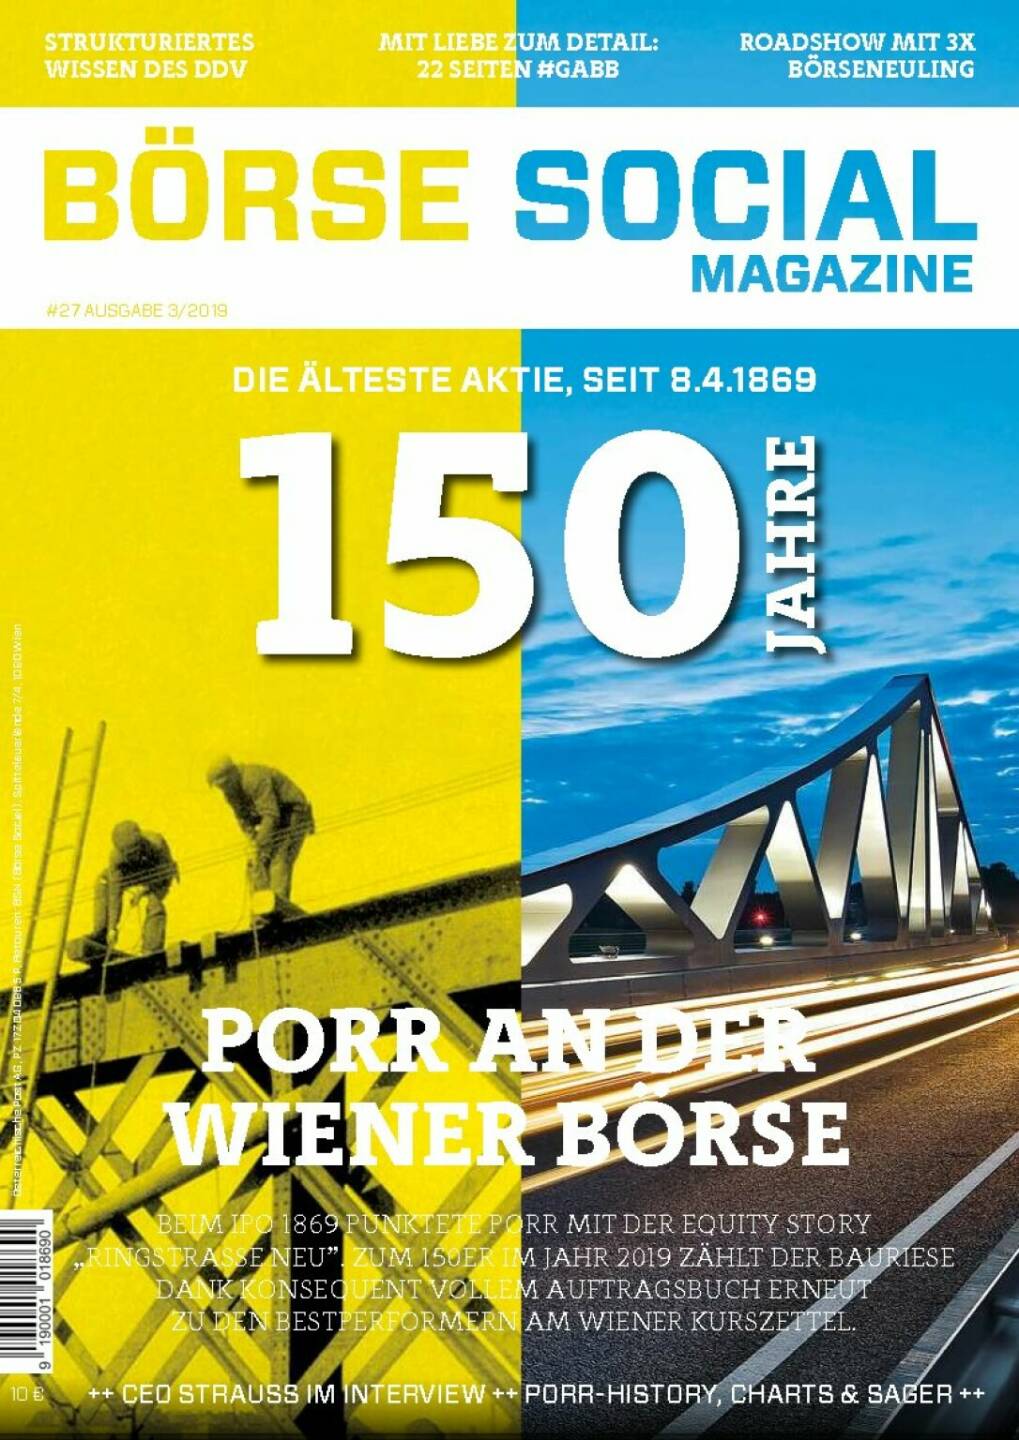 Magazine #27 - März 2019: Wenn das kein Cover ist ... Porr, die älteste Aktie am Kurszettel der Wiener Börse, feiert nicht irgendeinen Geburtstag, sondern gleich den runden 150er